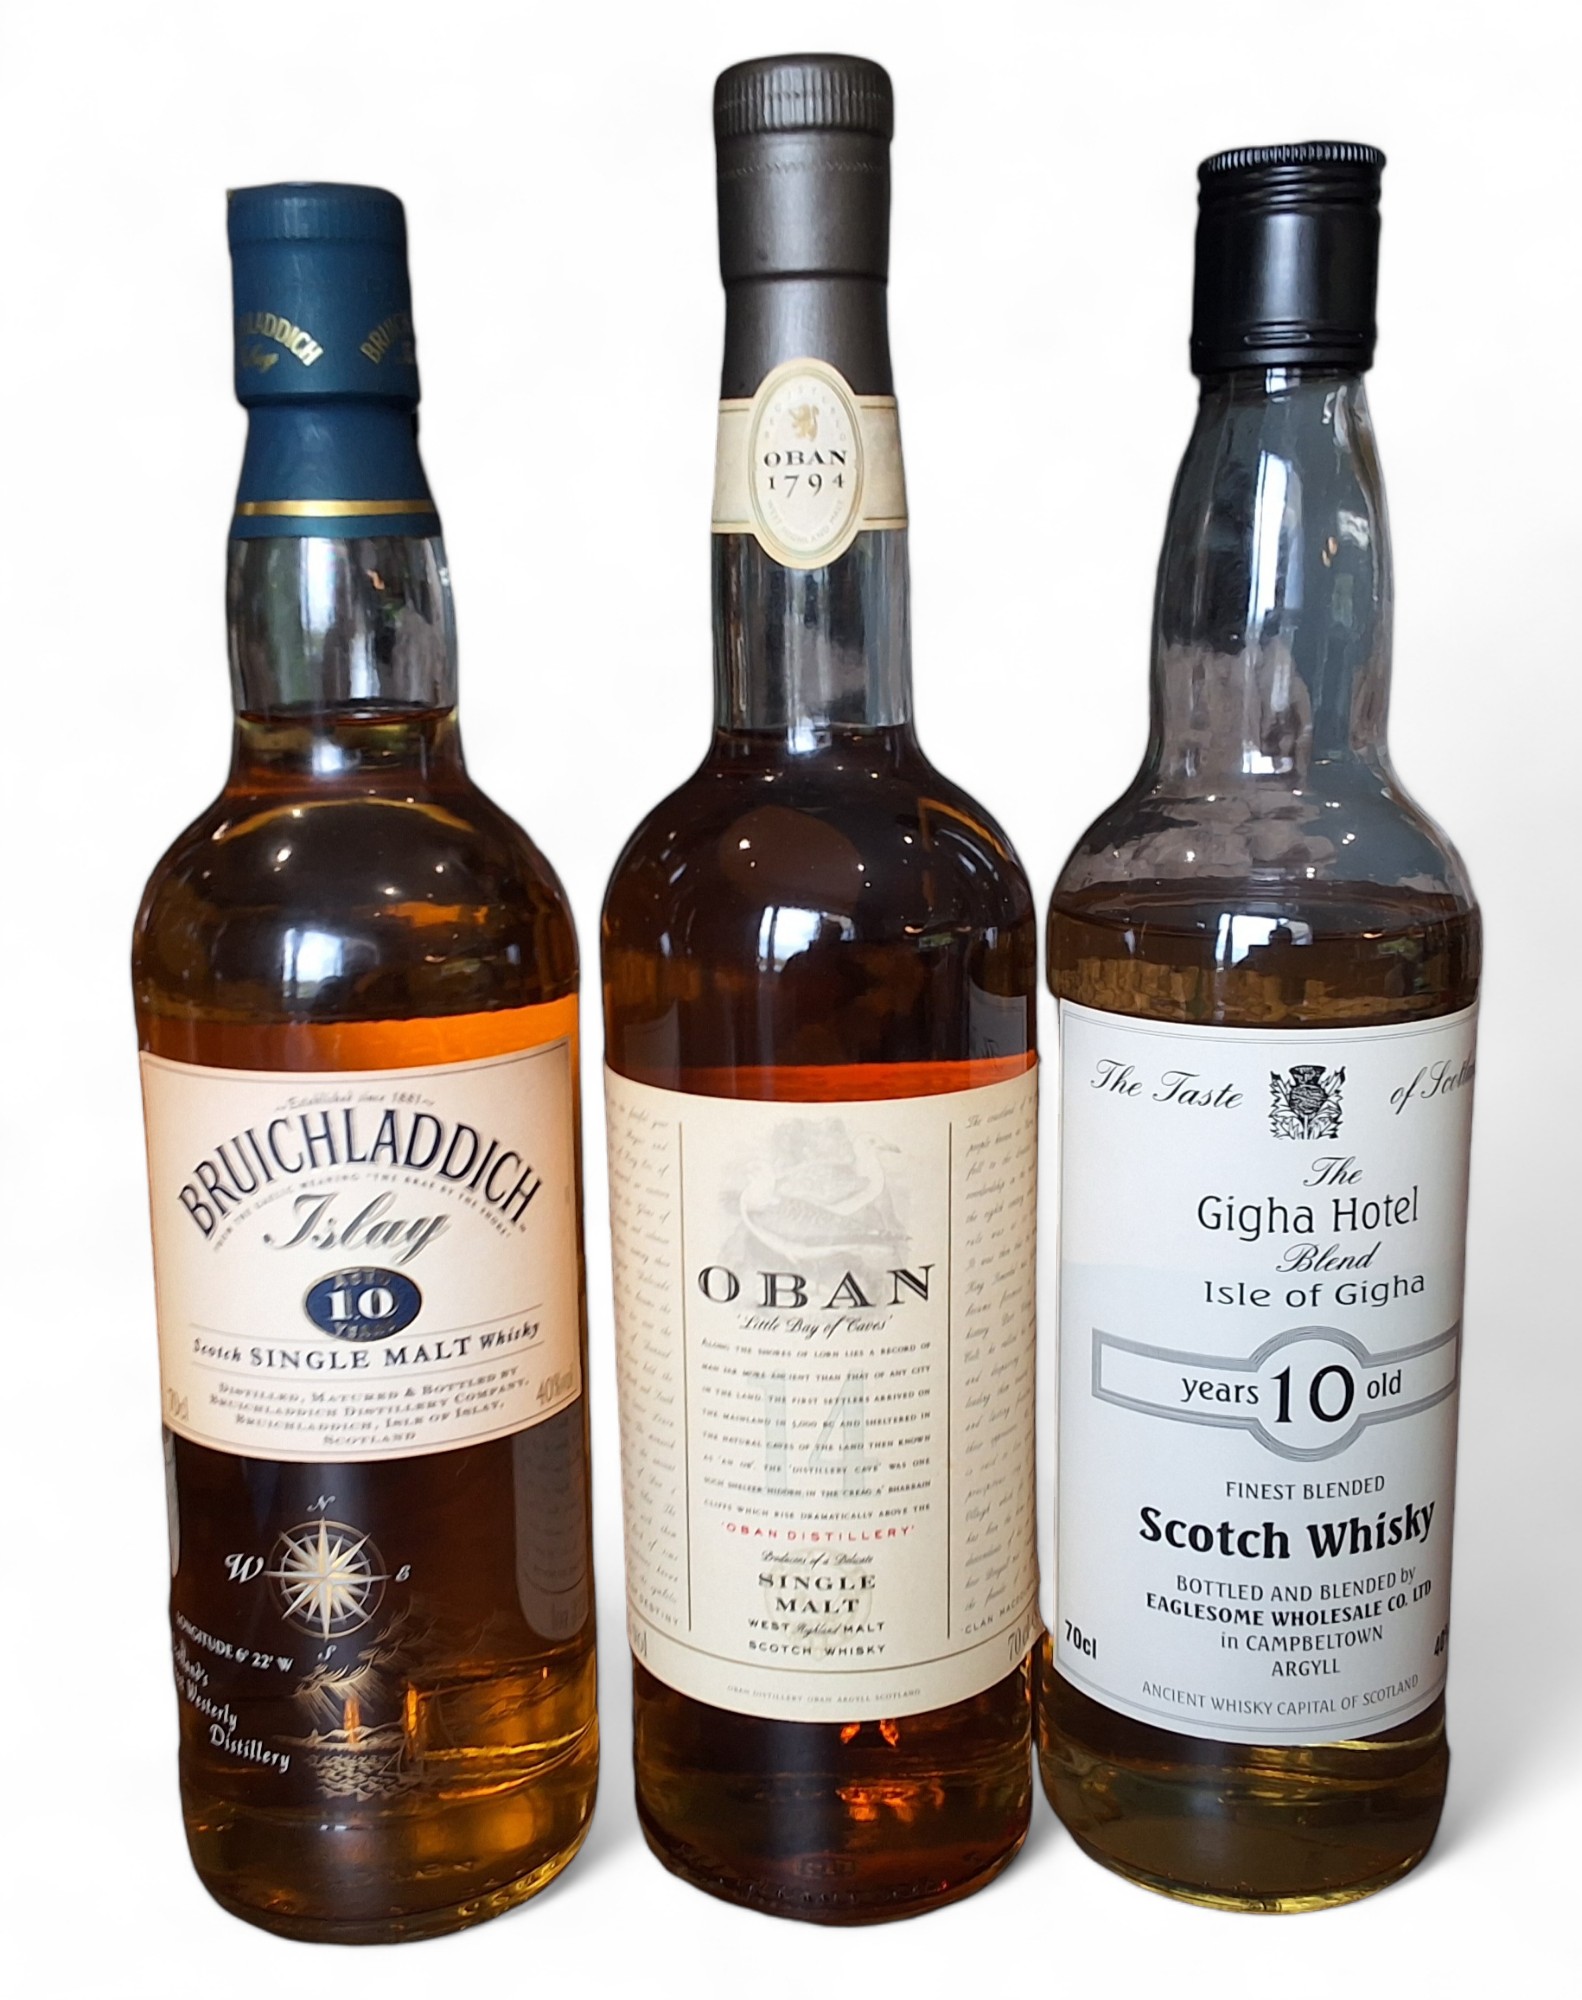 Bruichladdich, Islay 10 Year Old Scotch Single Malt Whisky, 40% vol, 70cl; Oban 'Little Bay of